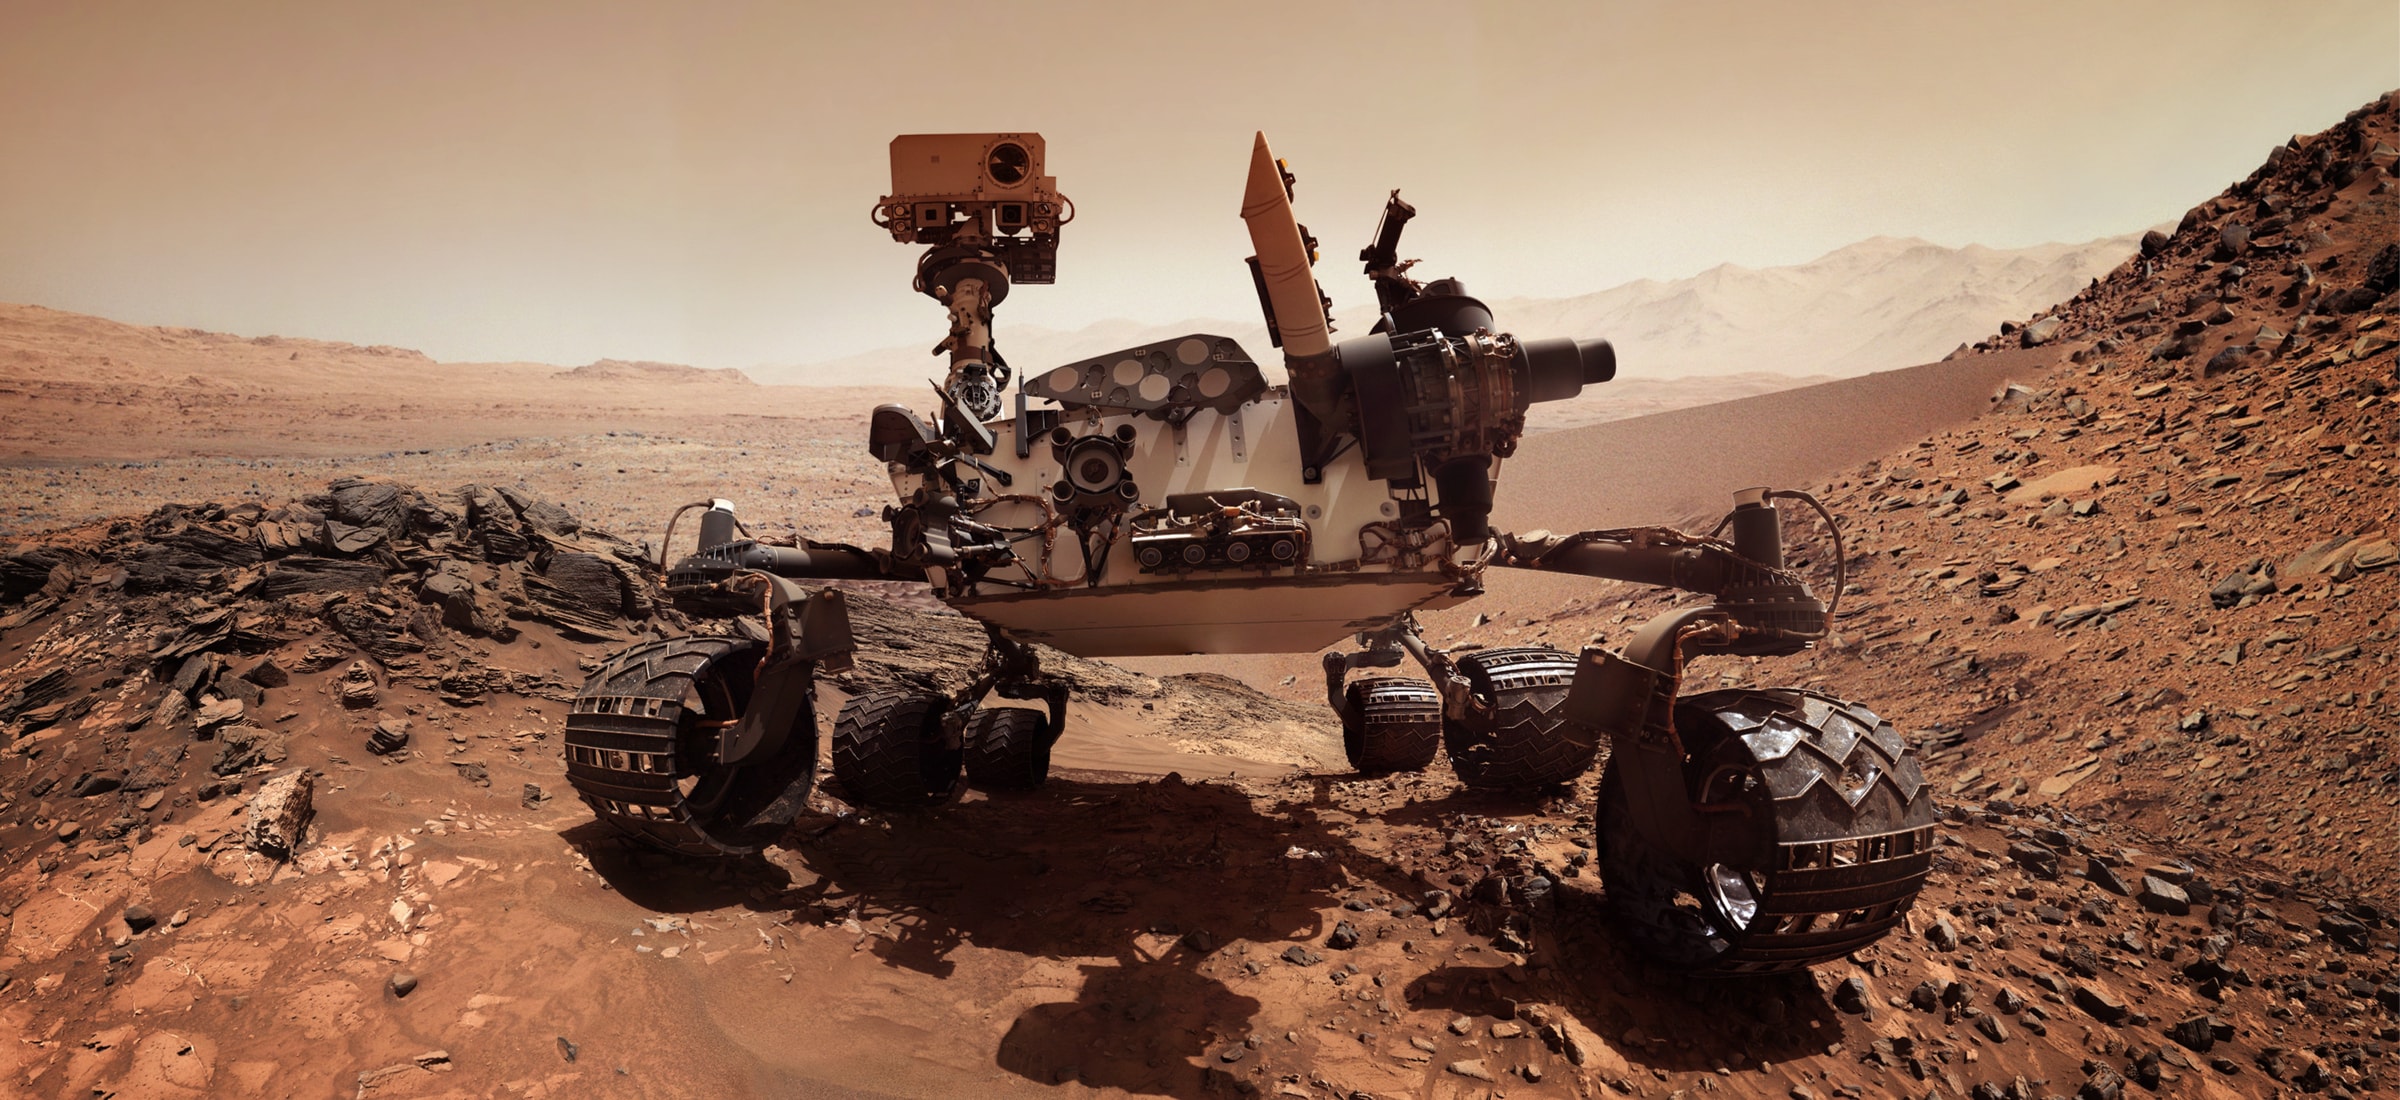 Martian Curiosity roverrek duela egun batzuk argazki bat atera zizun. Ez zenekien ezta